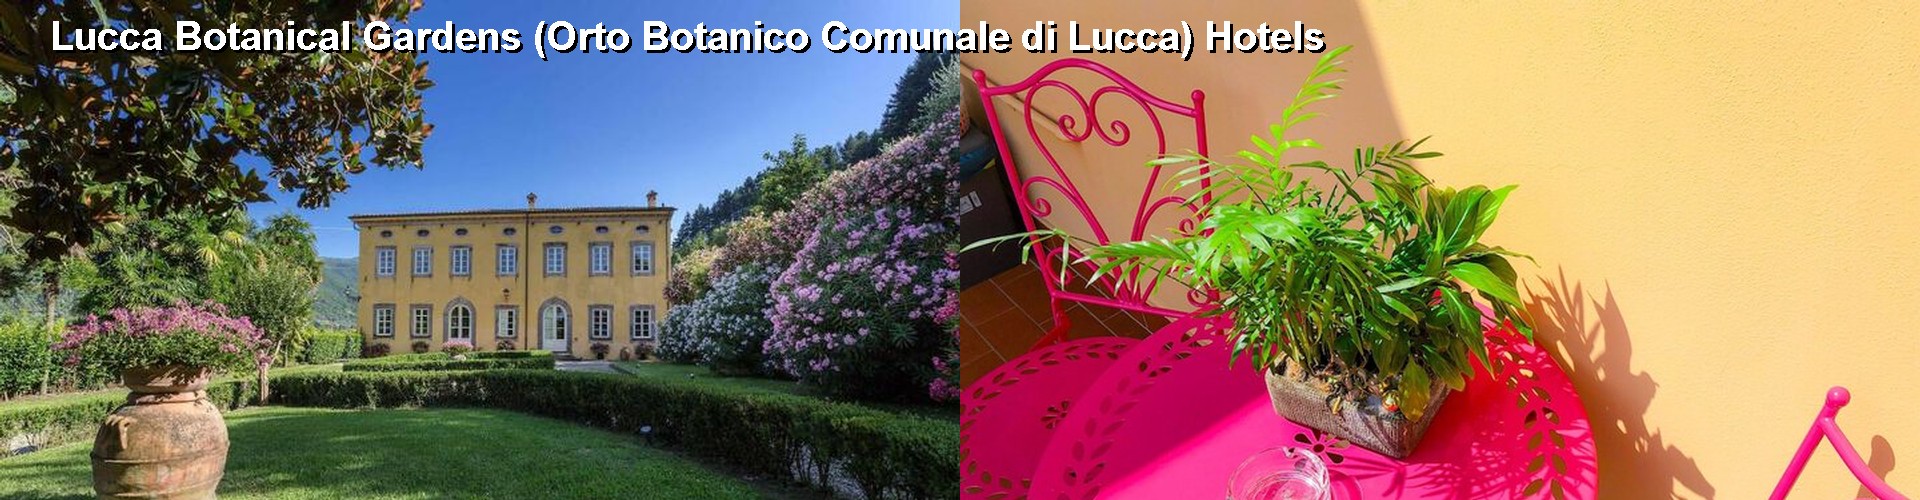 5 Best Hotels near Lucca Botanical Gardens (Orto Botanico Comunale di Lucca)